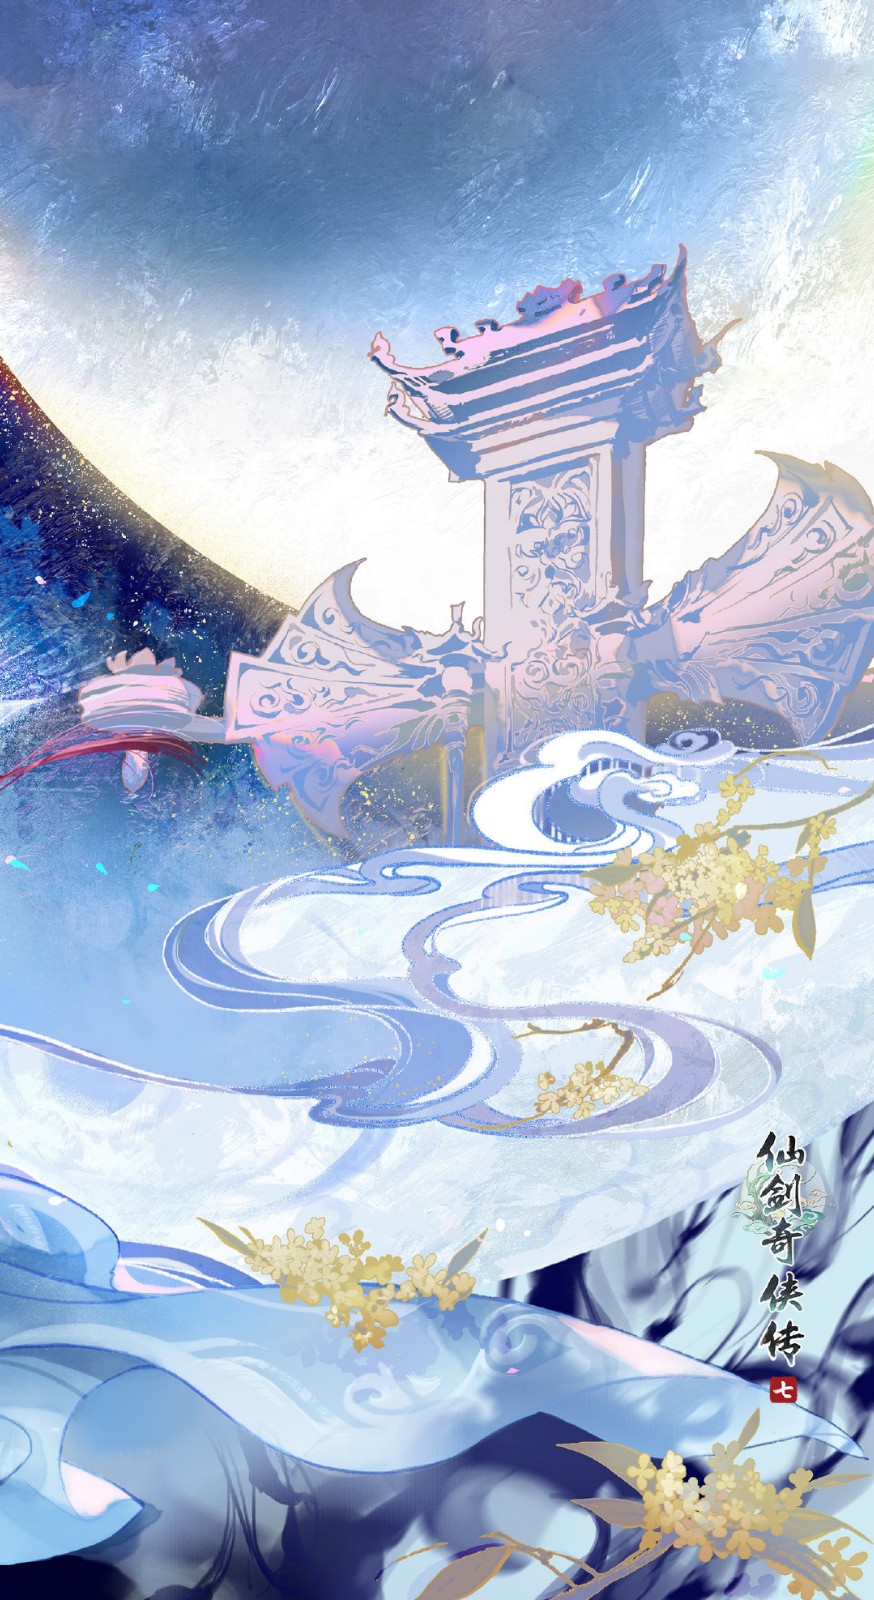 《仙剑奇侠传7》发布中秋美食壁纸 祝大家阖家团圆健康平安